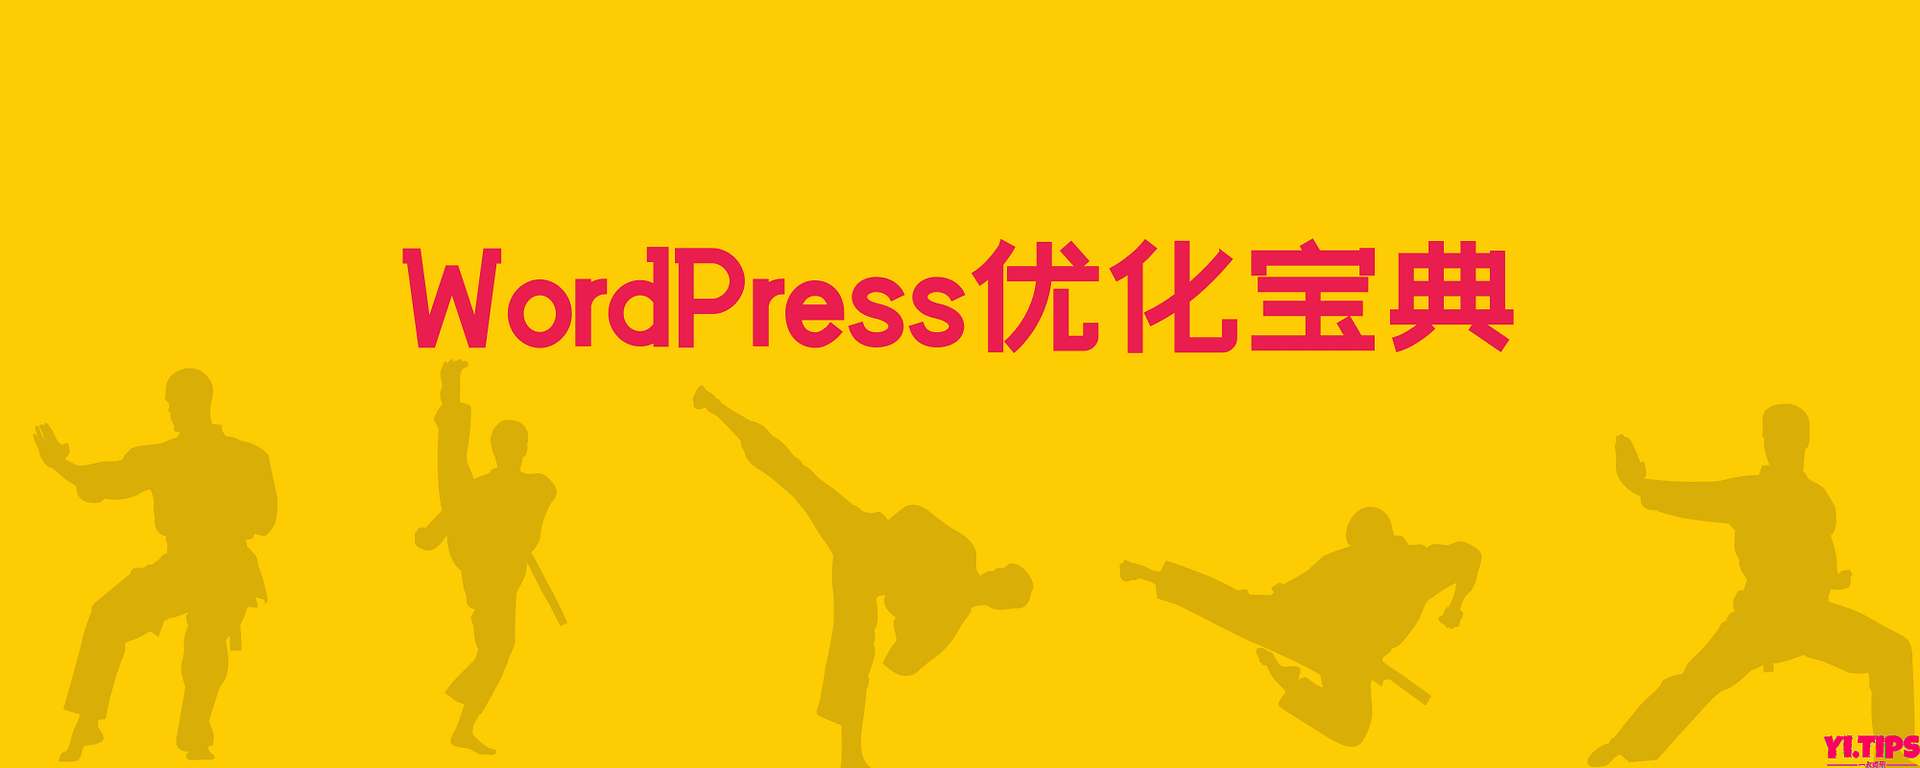 WordPress优化宝典 - Yi.Tips-Yi.Tips